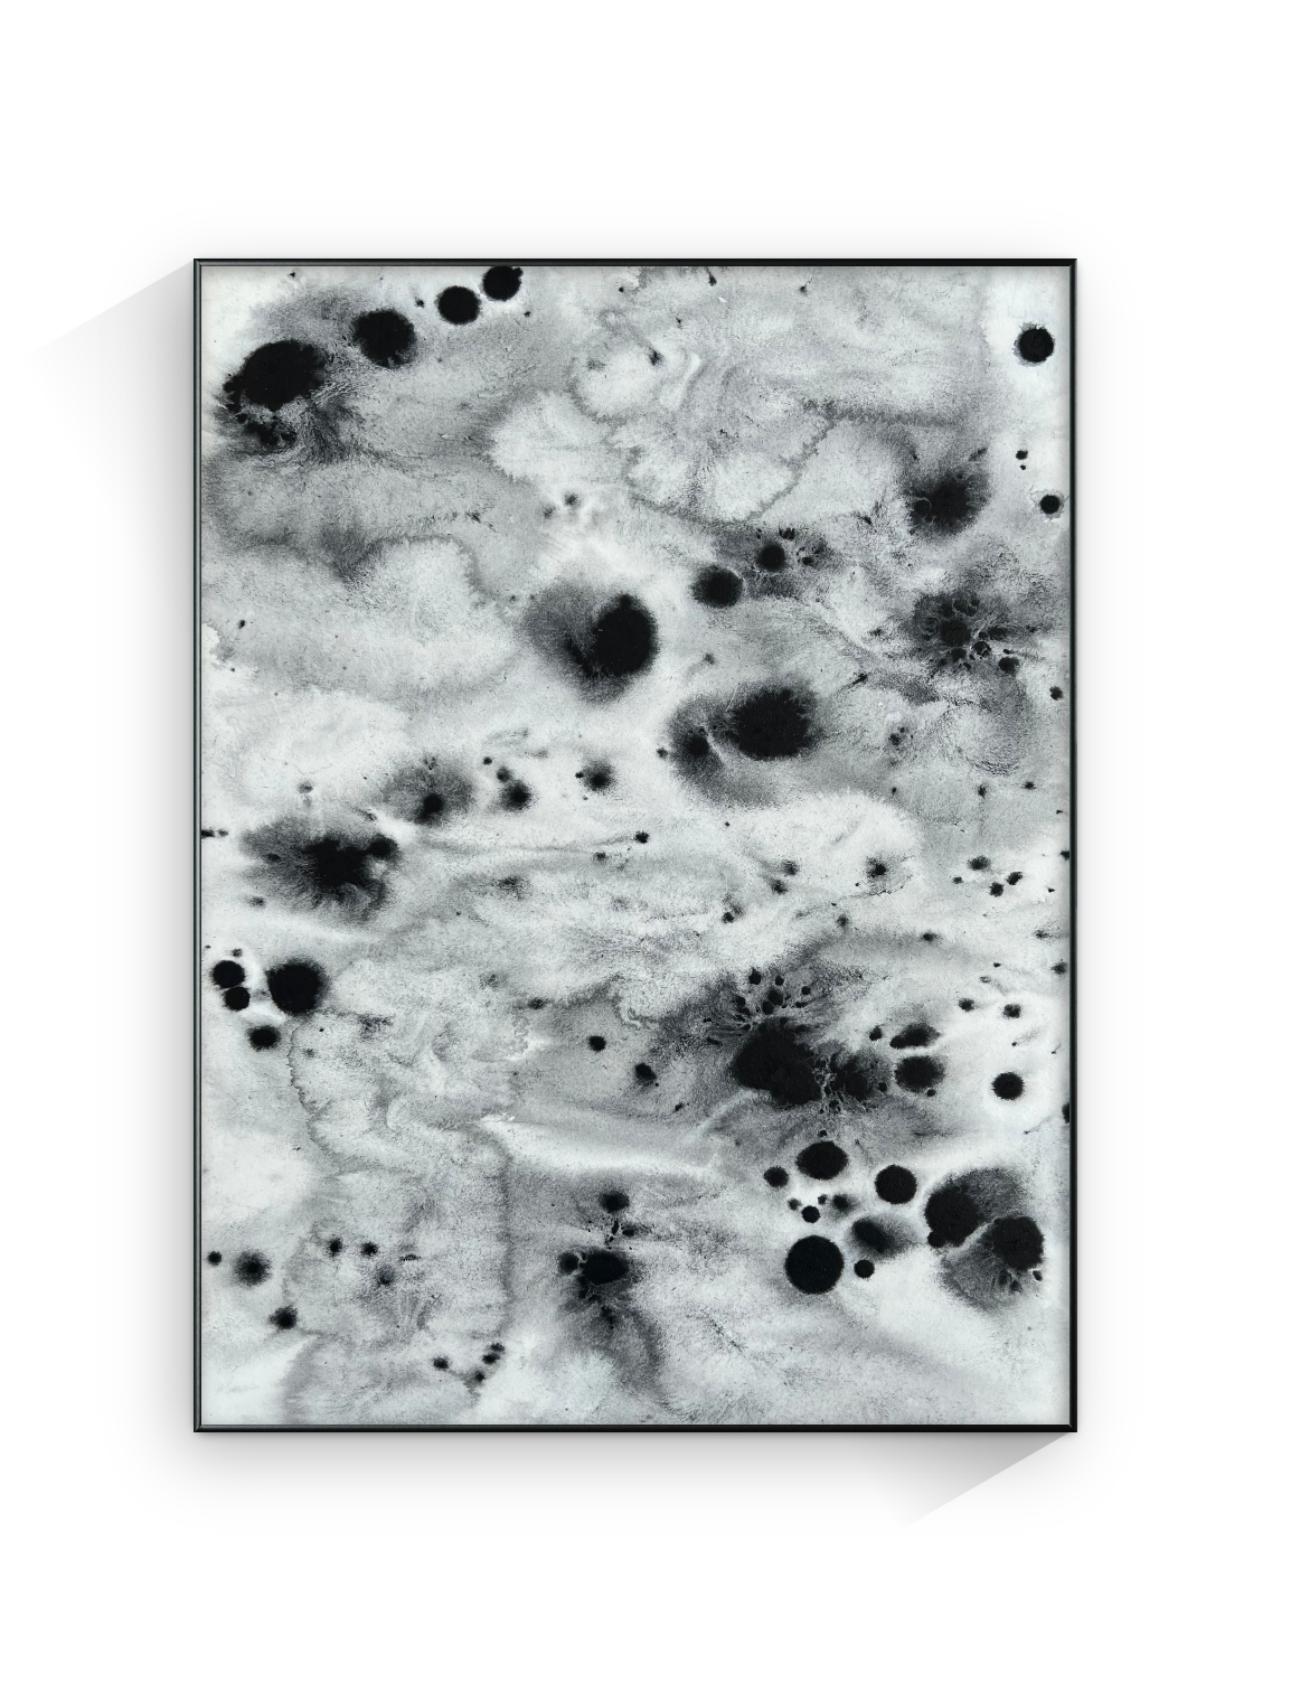 Black And White Minimal Painting ist ein Original-Kunstwerk von TUSET aus dem Jahr 2020.  Auf Wunsch können wir es in Naturholz oder schwarz einrahmen.

Der Titel dieses Werks lautet 